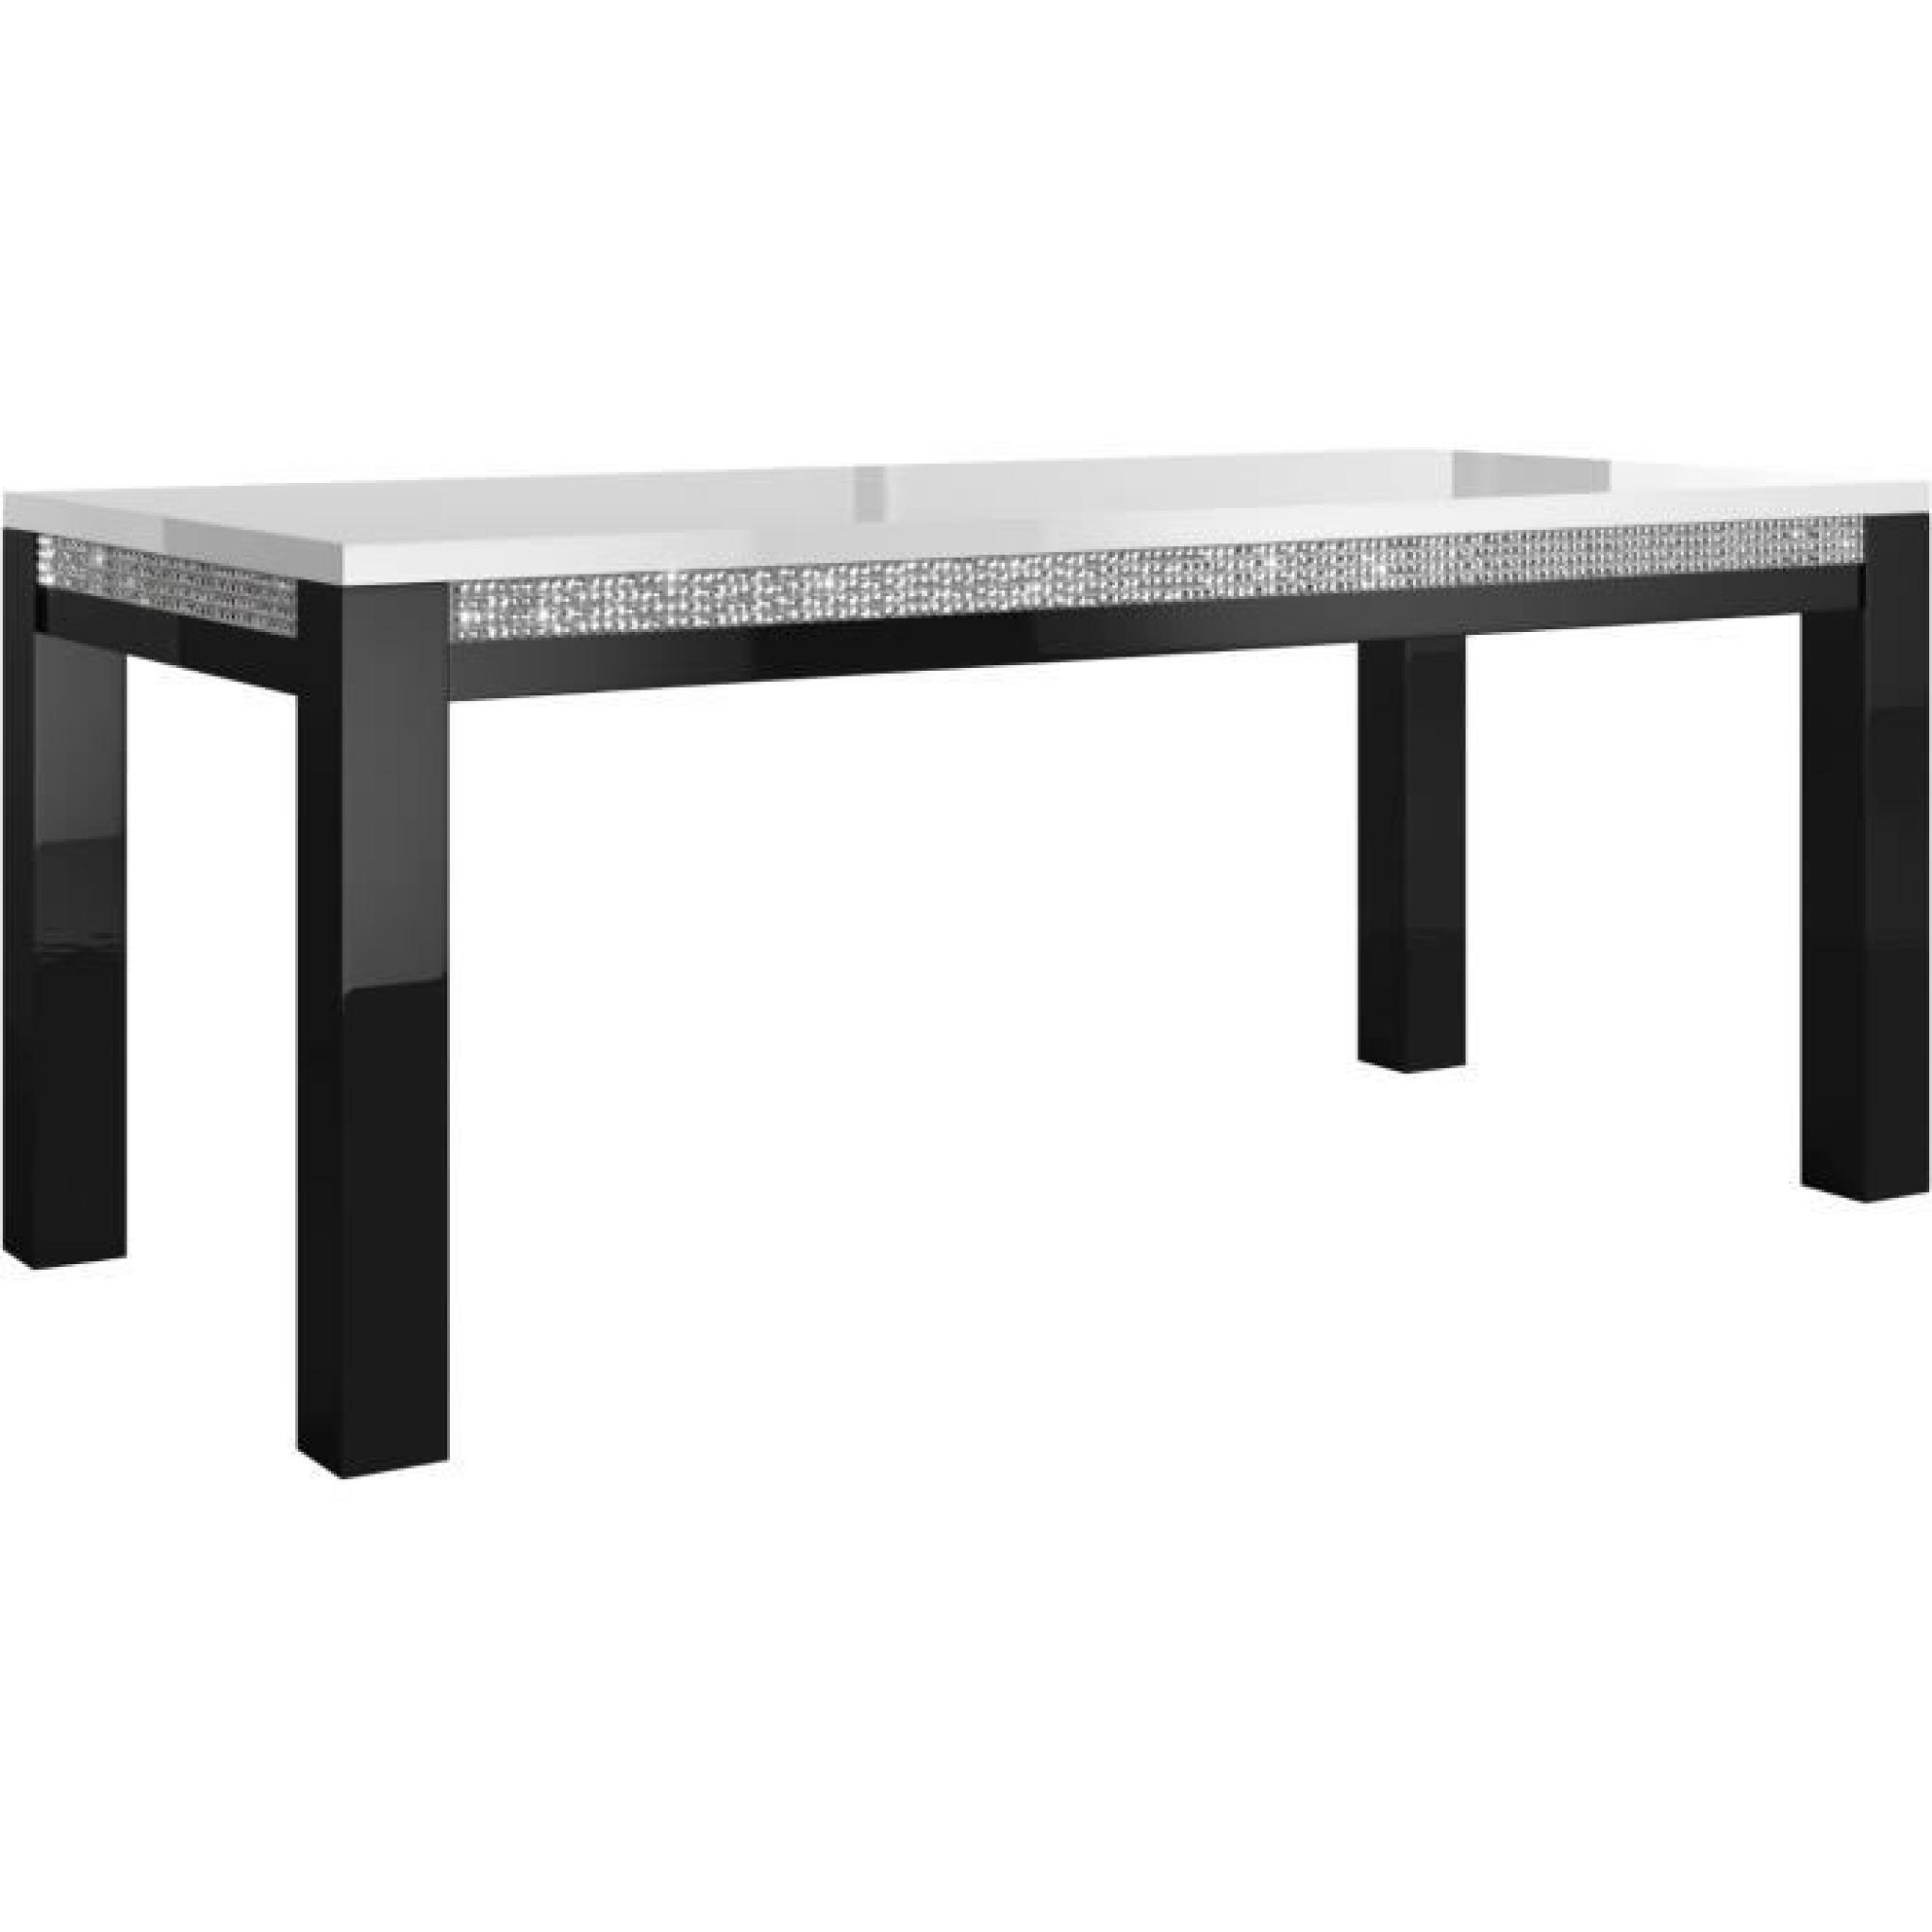 Table à manger 160 cm + 4 chaises ultra design noir et blanc modele Prestige  pas cher